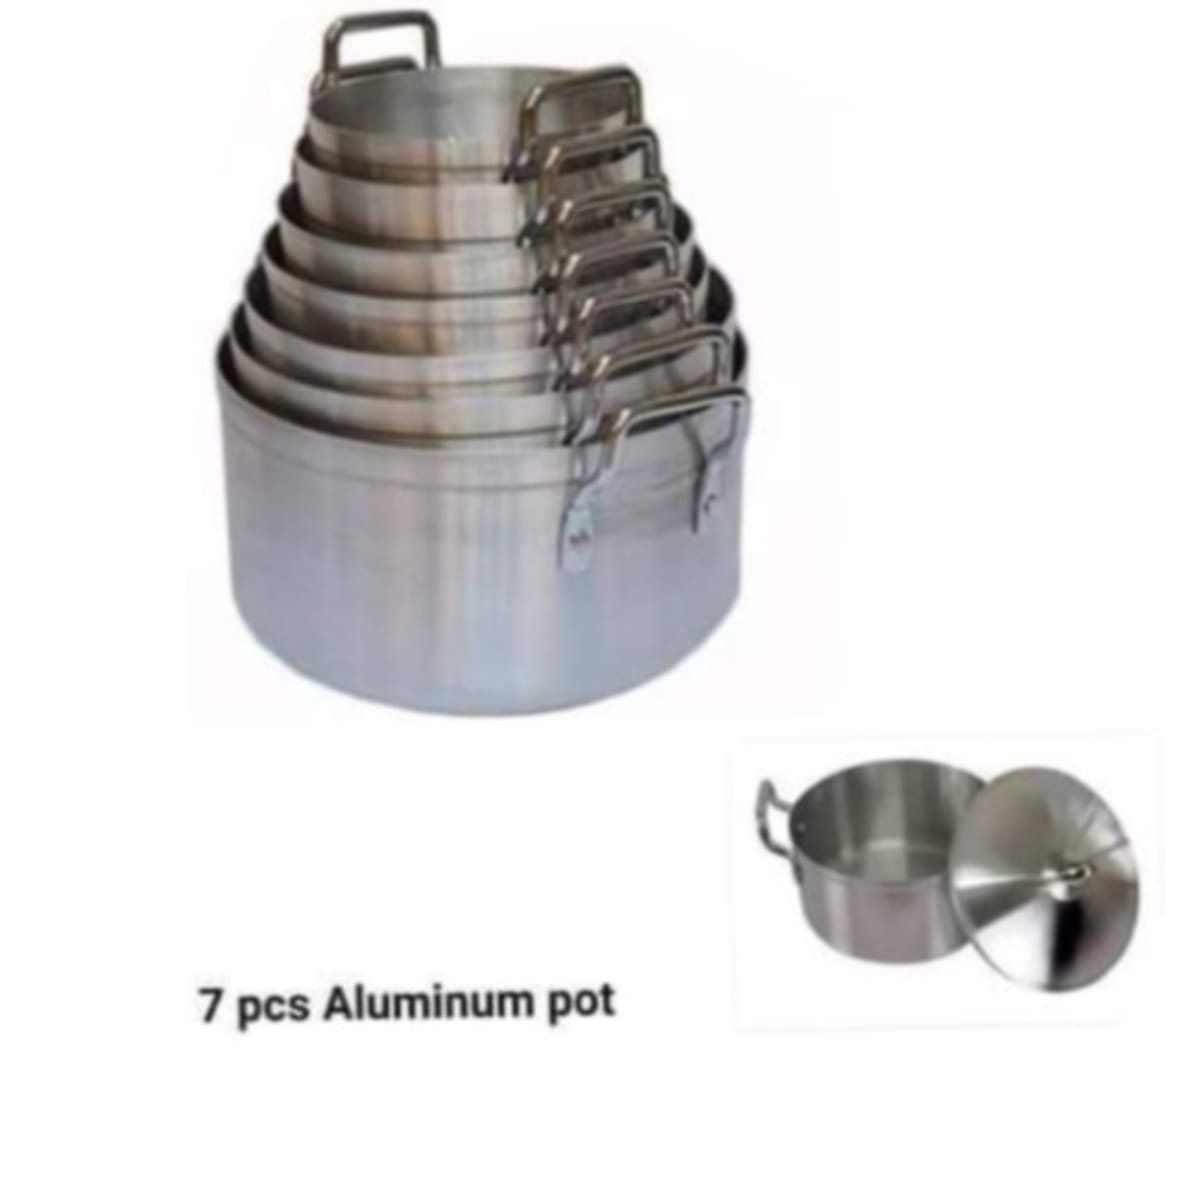 Aluminium Pot No26 7 liters